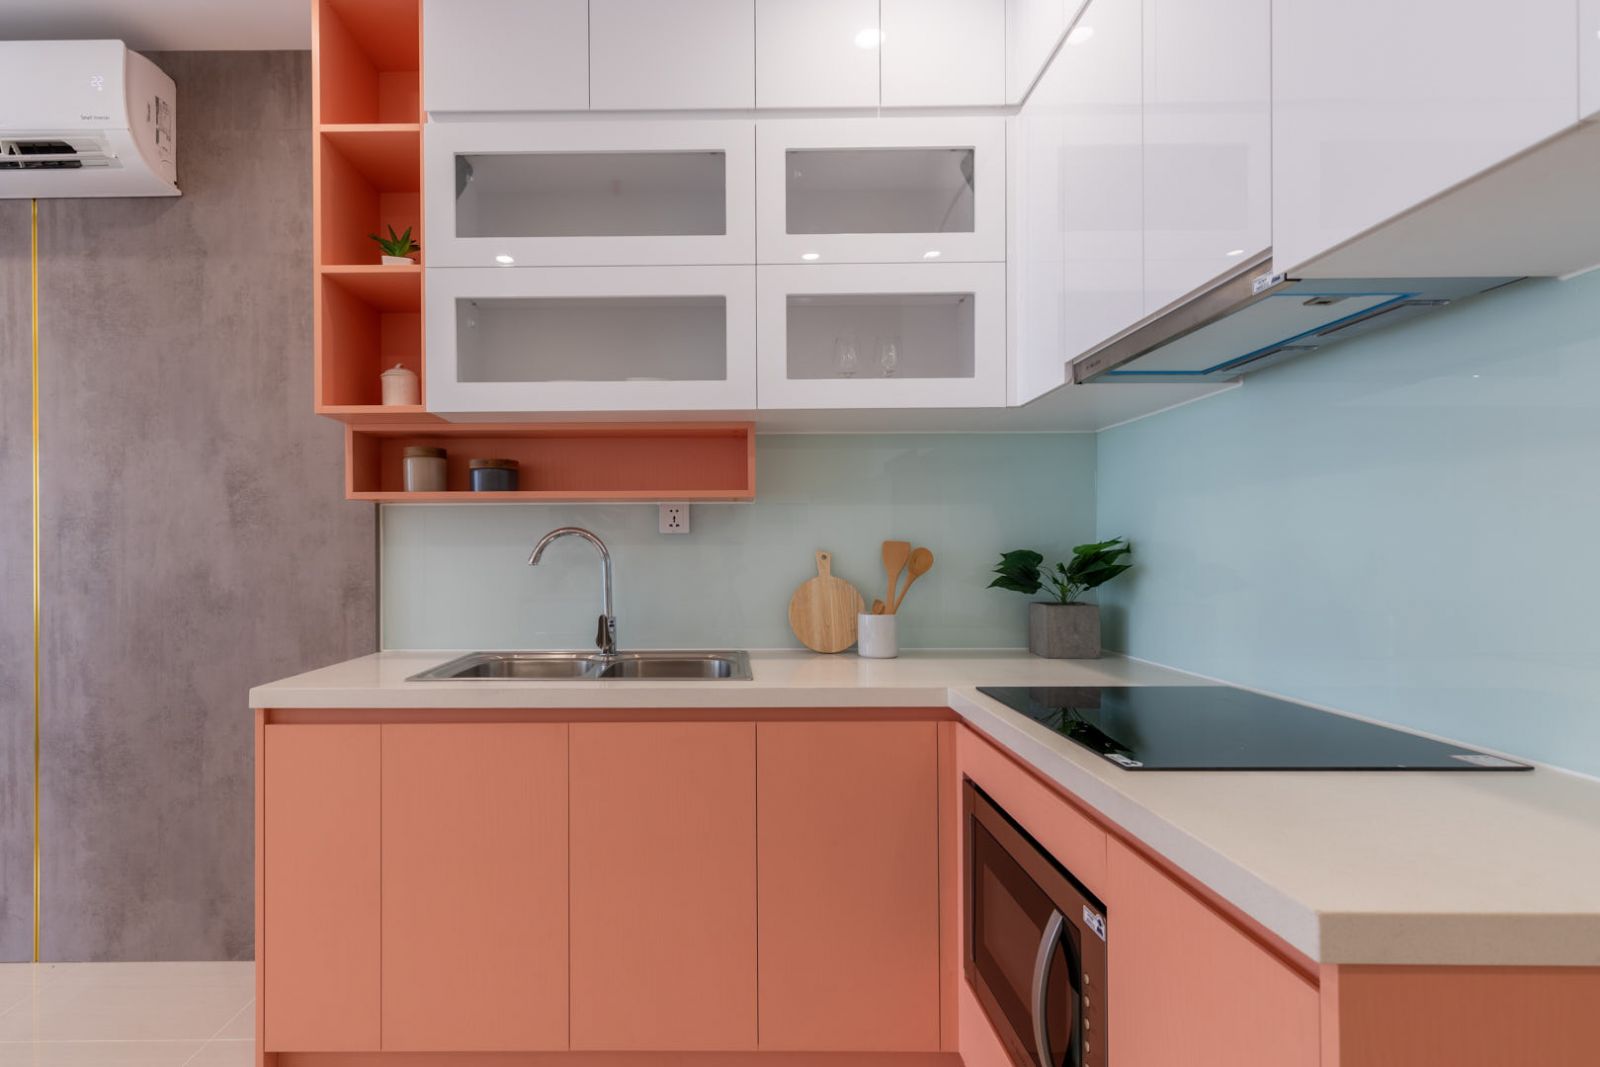 Thiết kế tủ bếp kịch trần để phòng bếp trở nên gọn gàng: